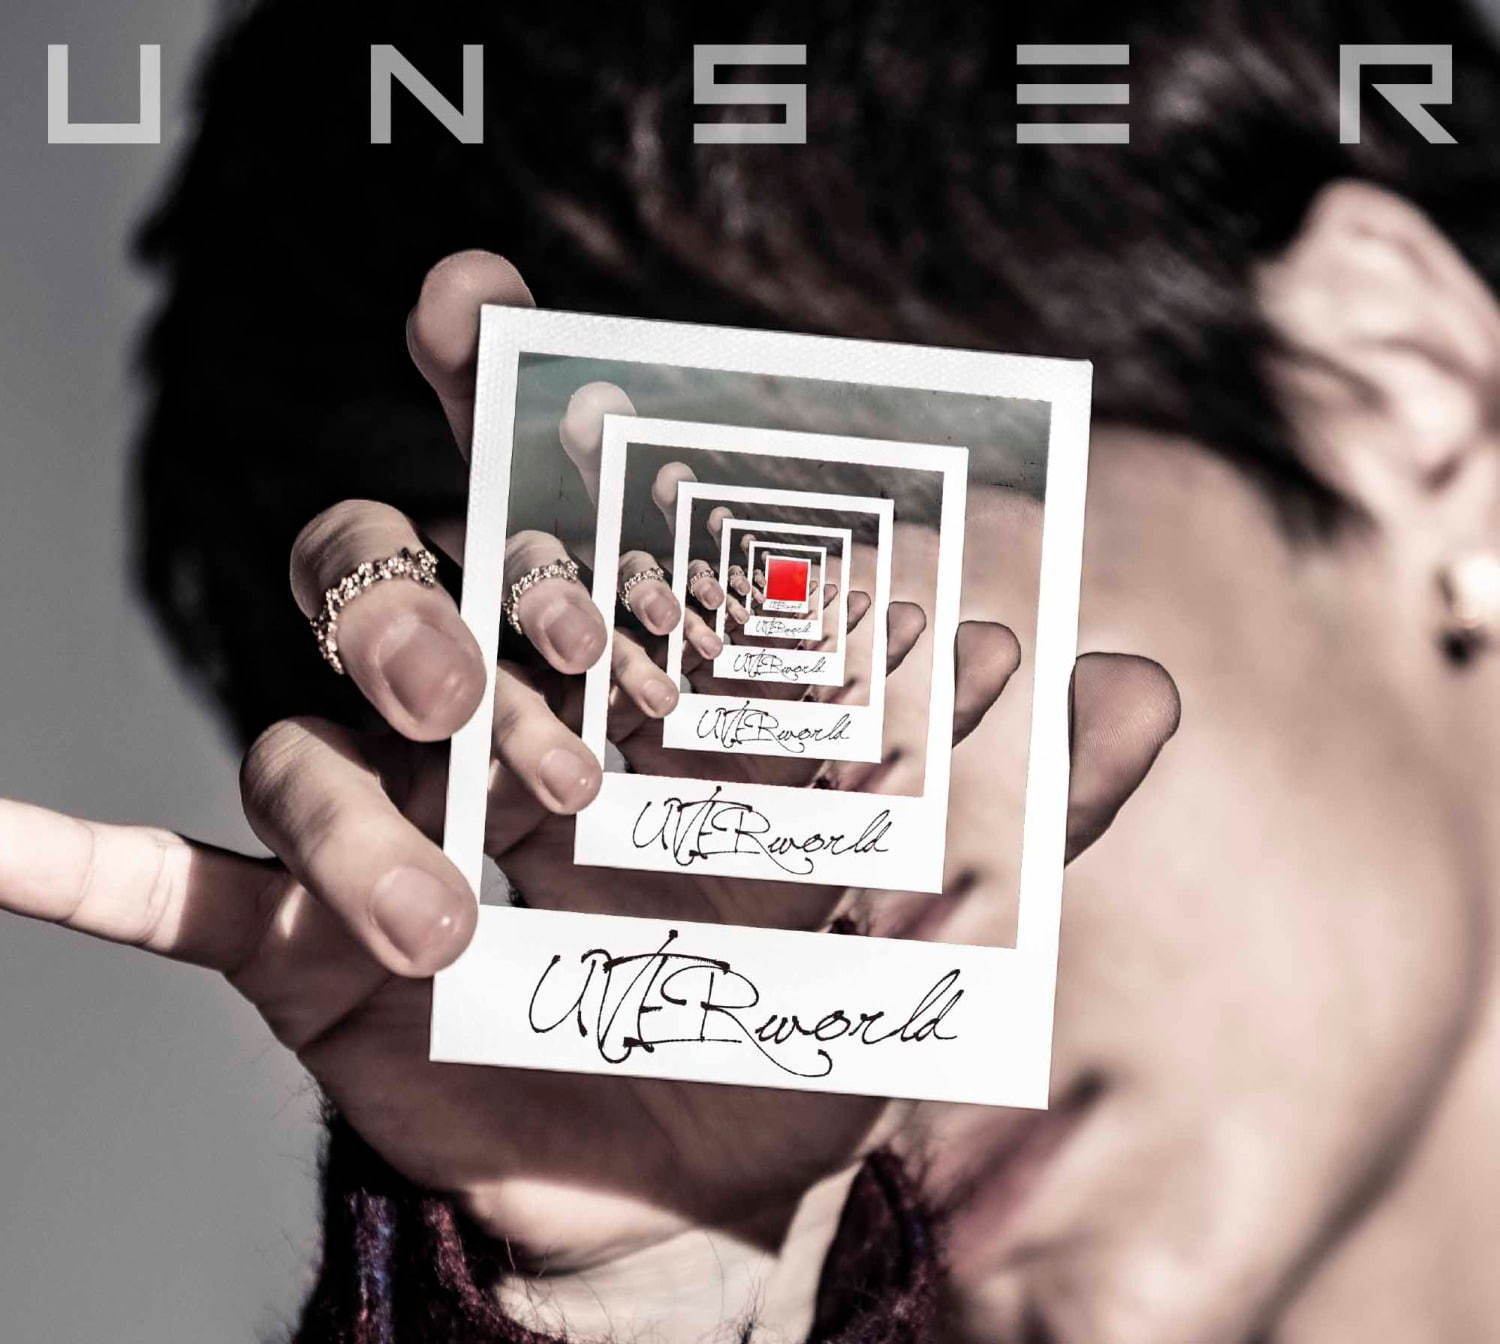 Uverworldが新作アルバム Unser アンサー リリース 全15曲を収録